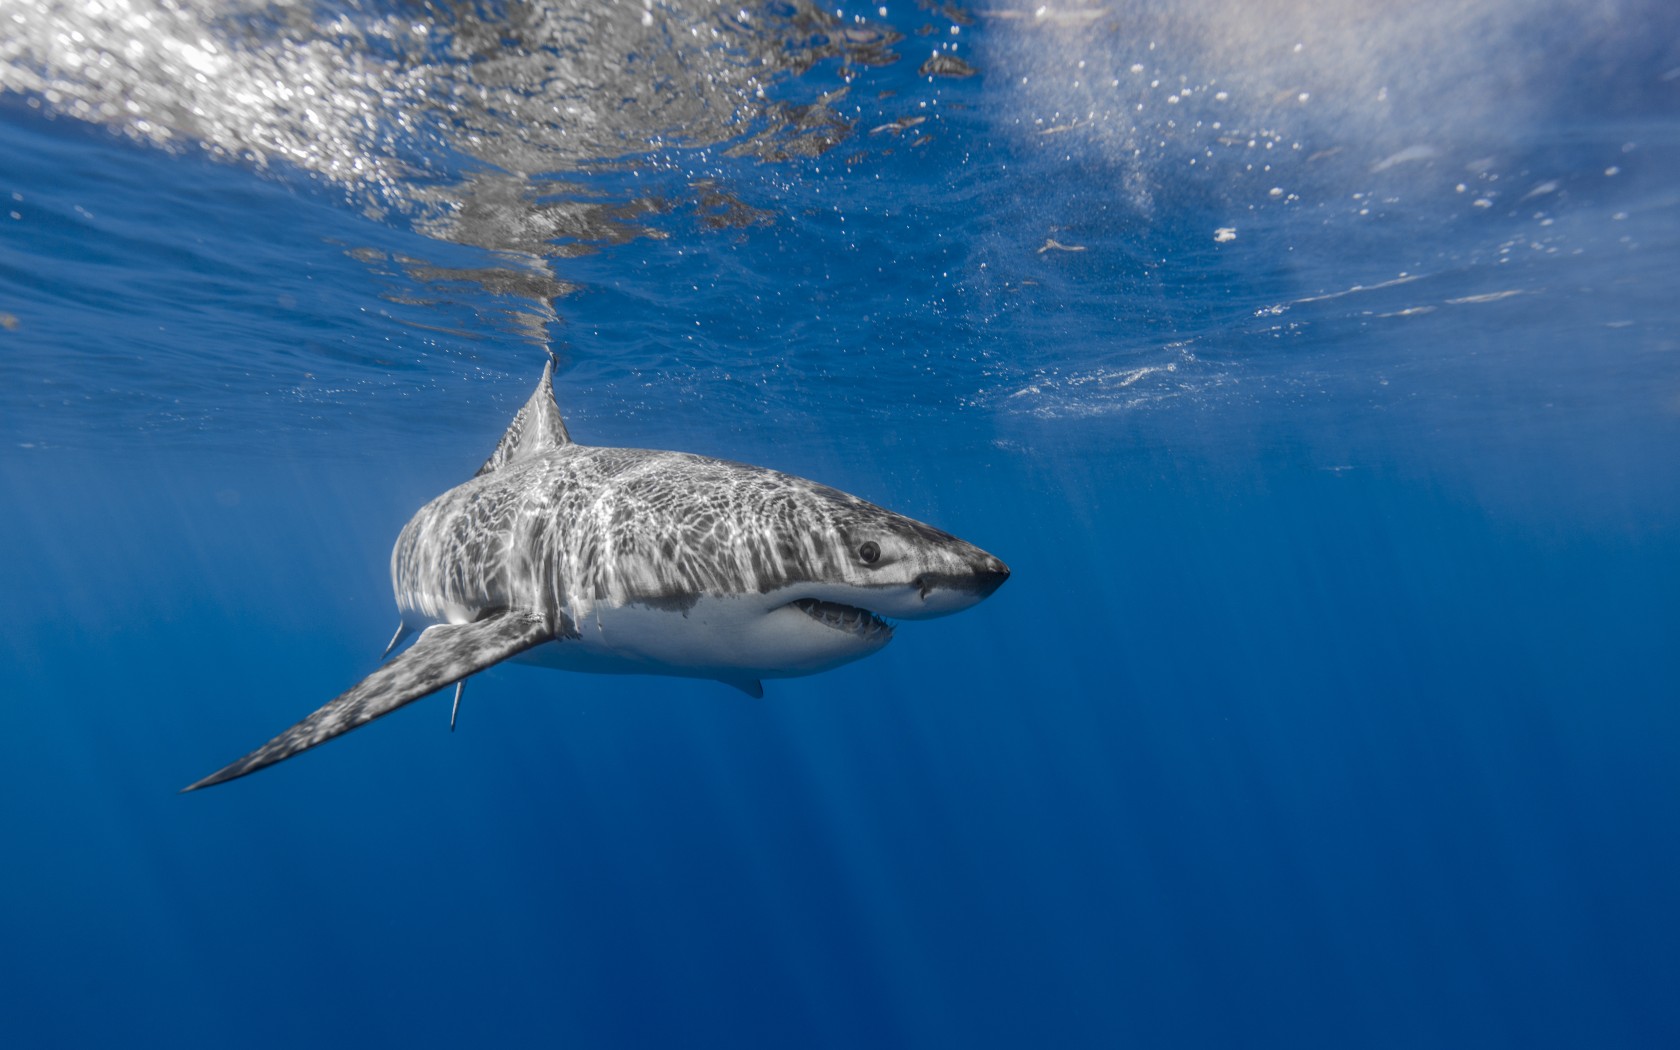 imágenes de fondo blanco,tiburón,gran tiburón blanco,pez,pez cartilaginoso,tiburón ballena